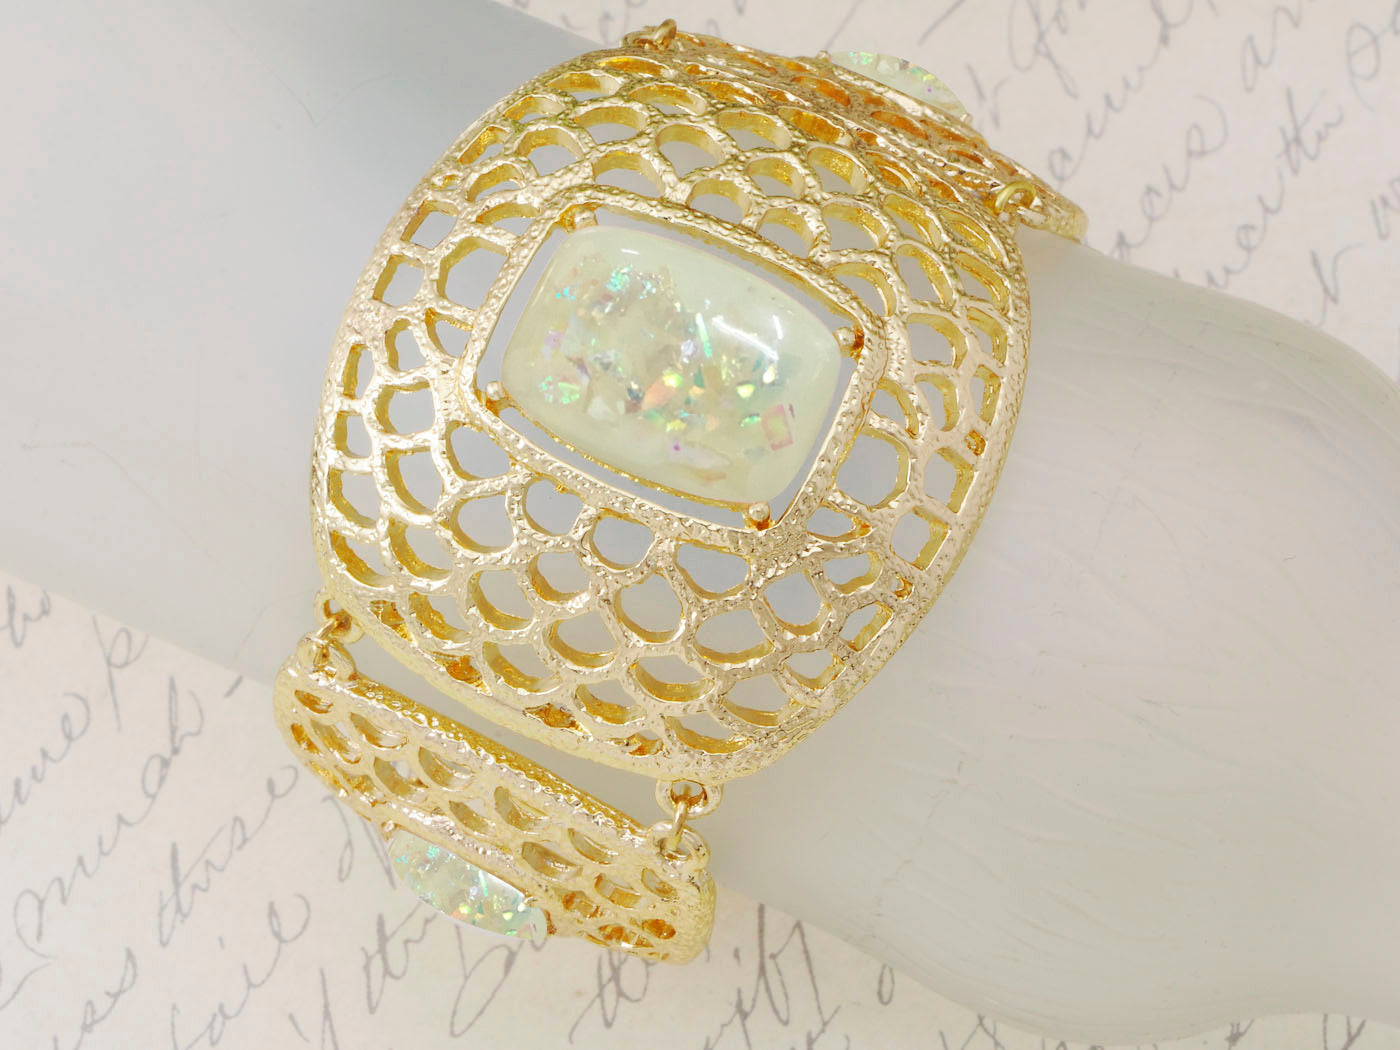 Contemporary White Honey Comb Design Bracelet